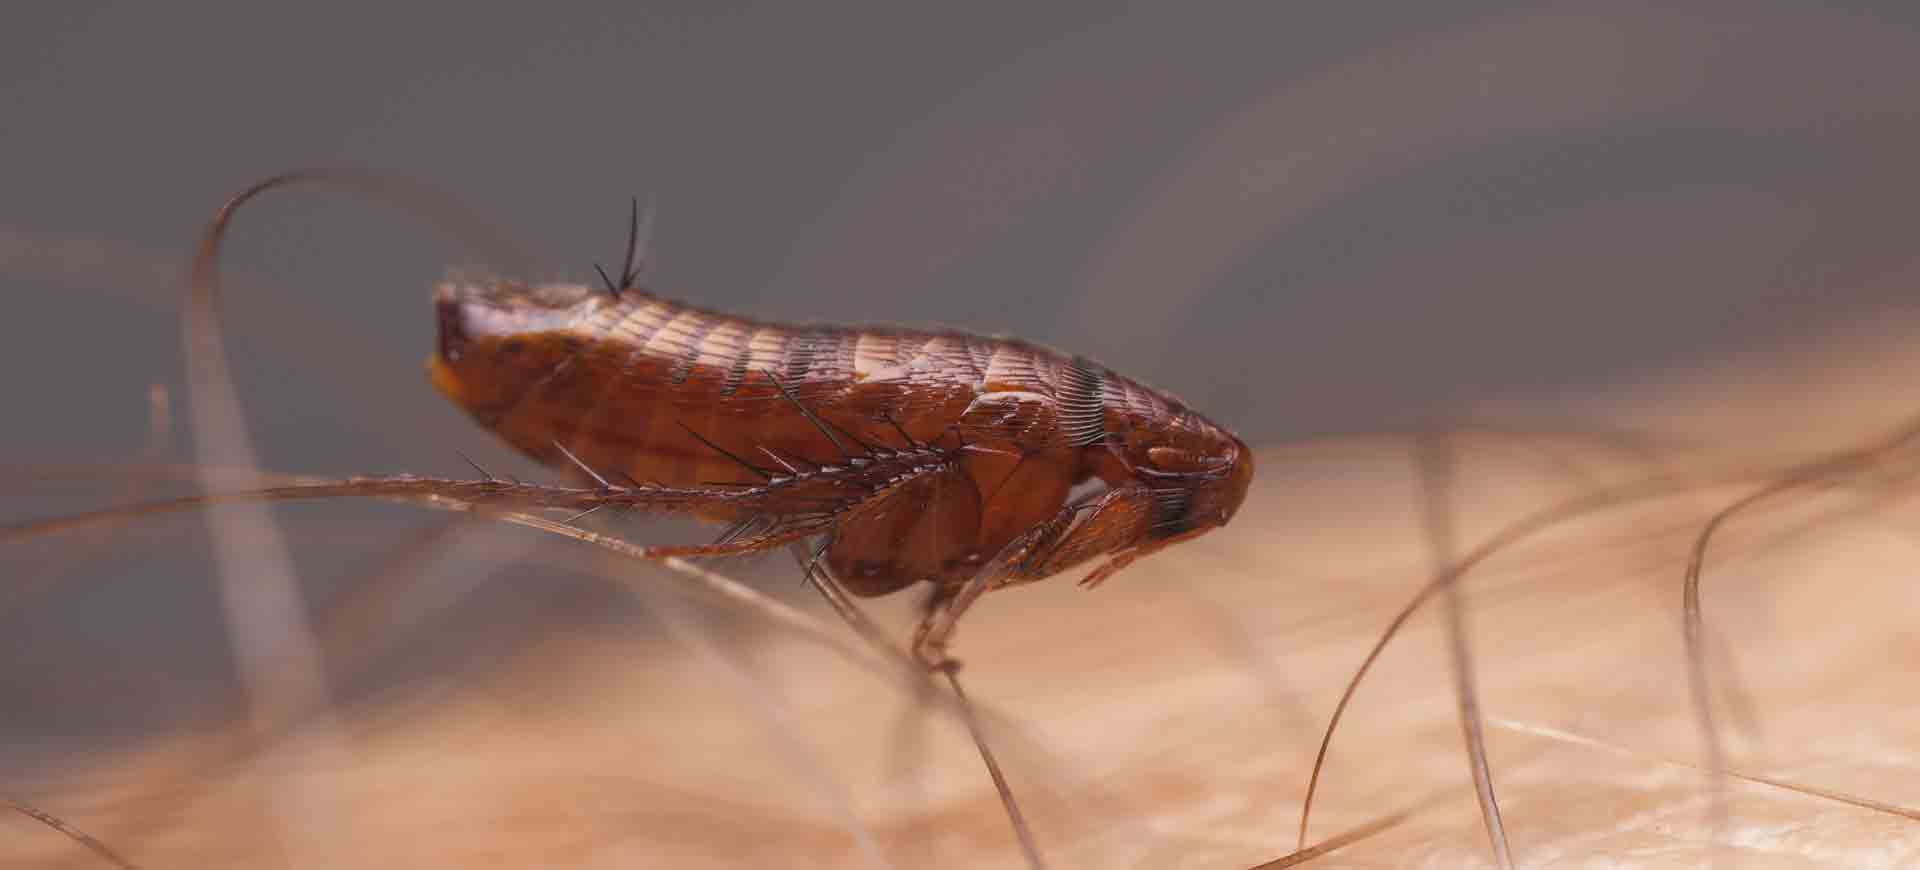 flea pest control hillcrest